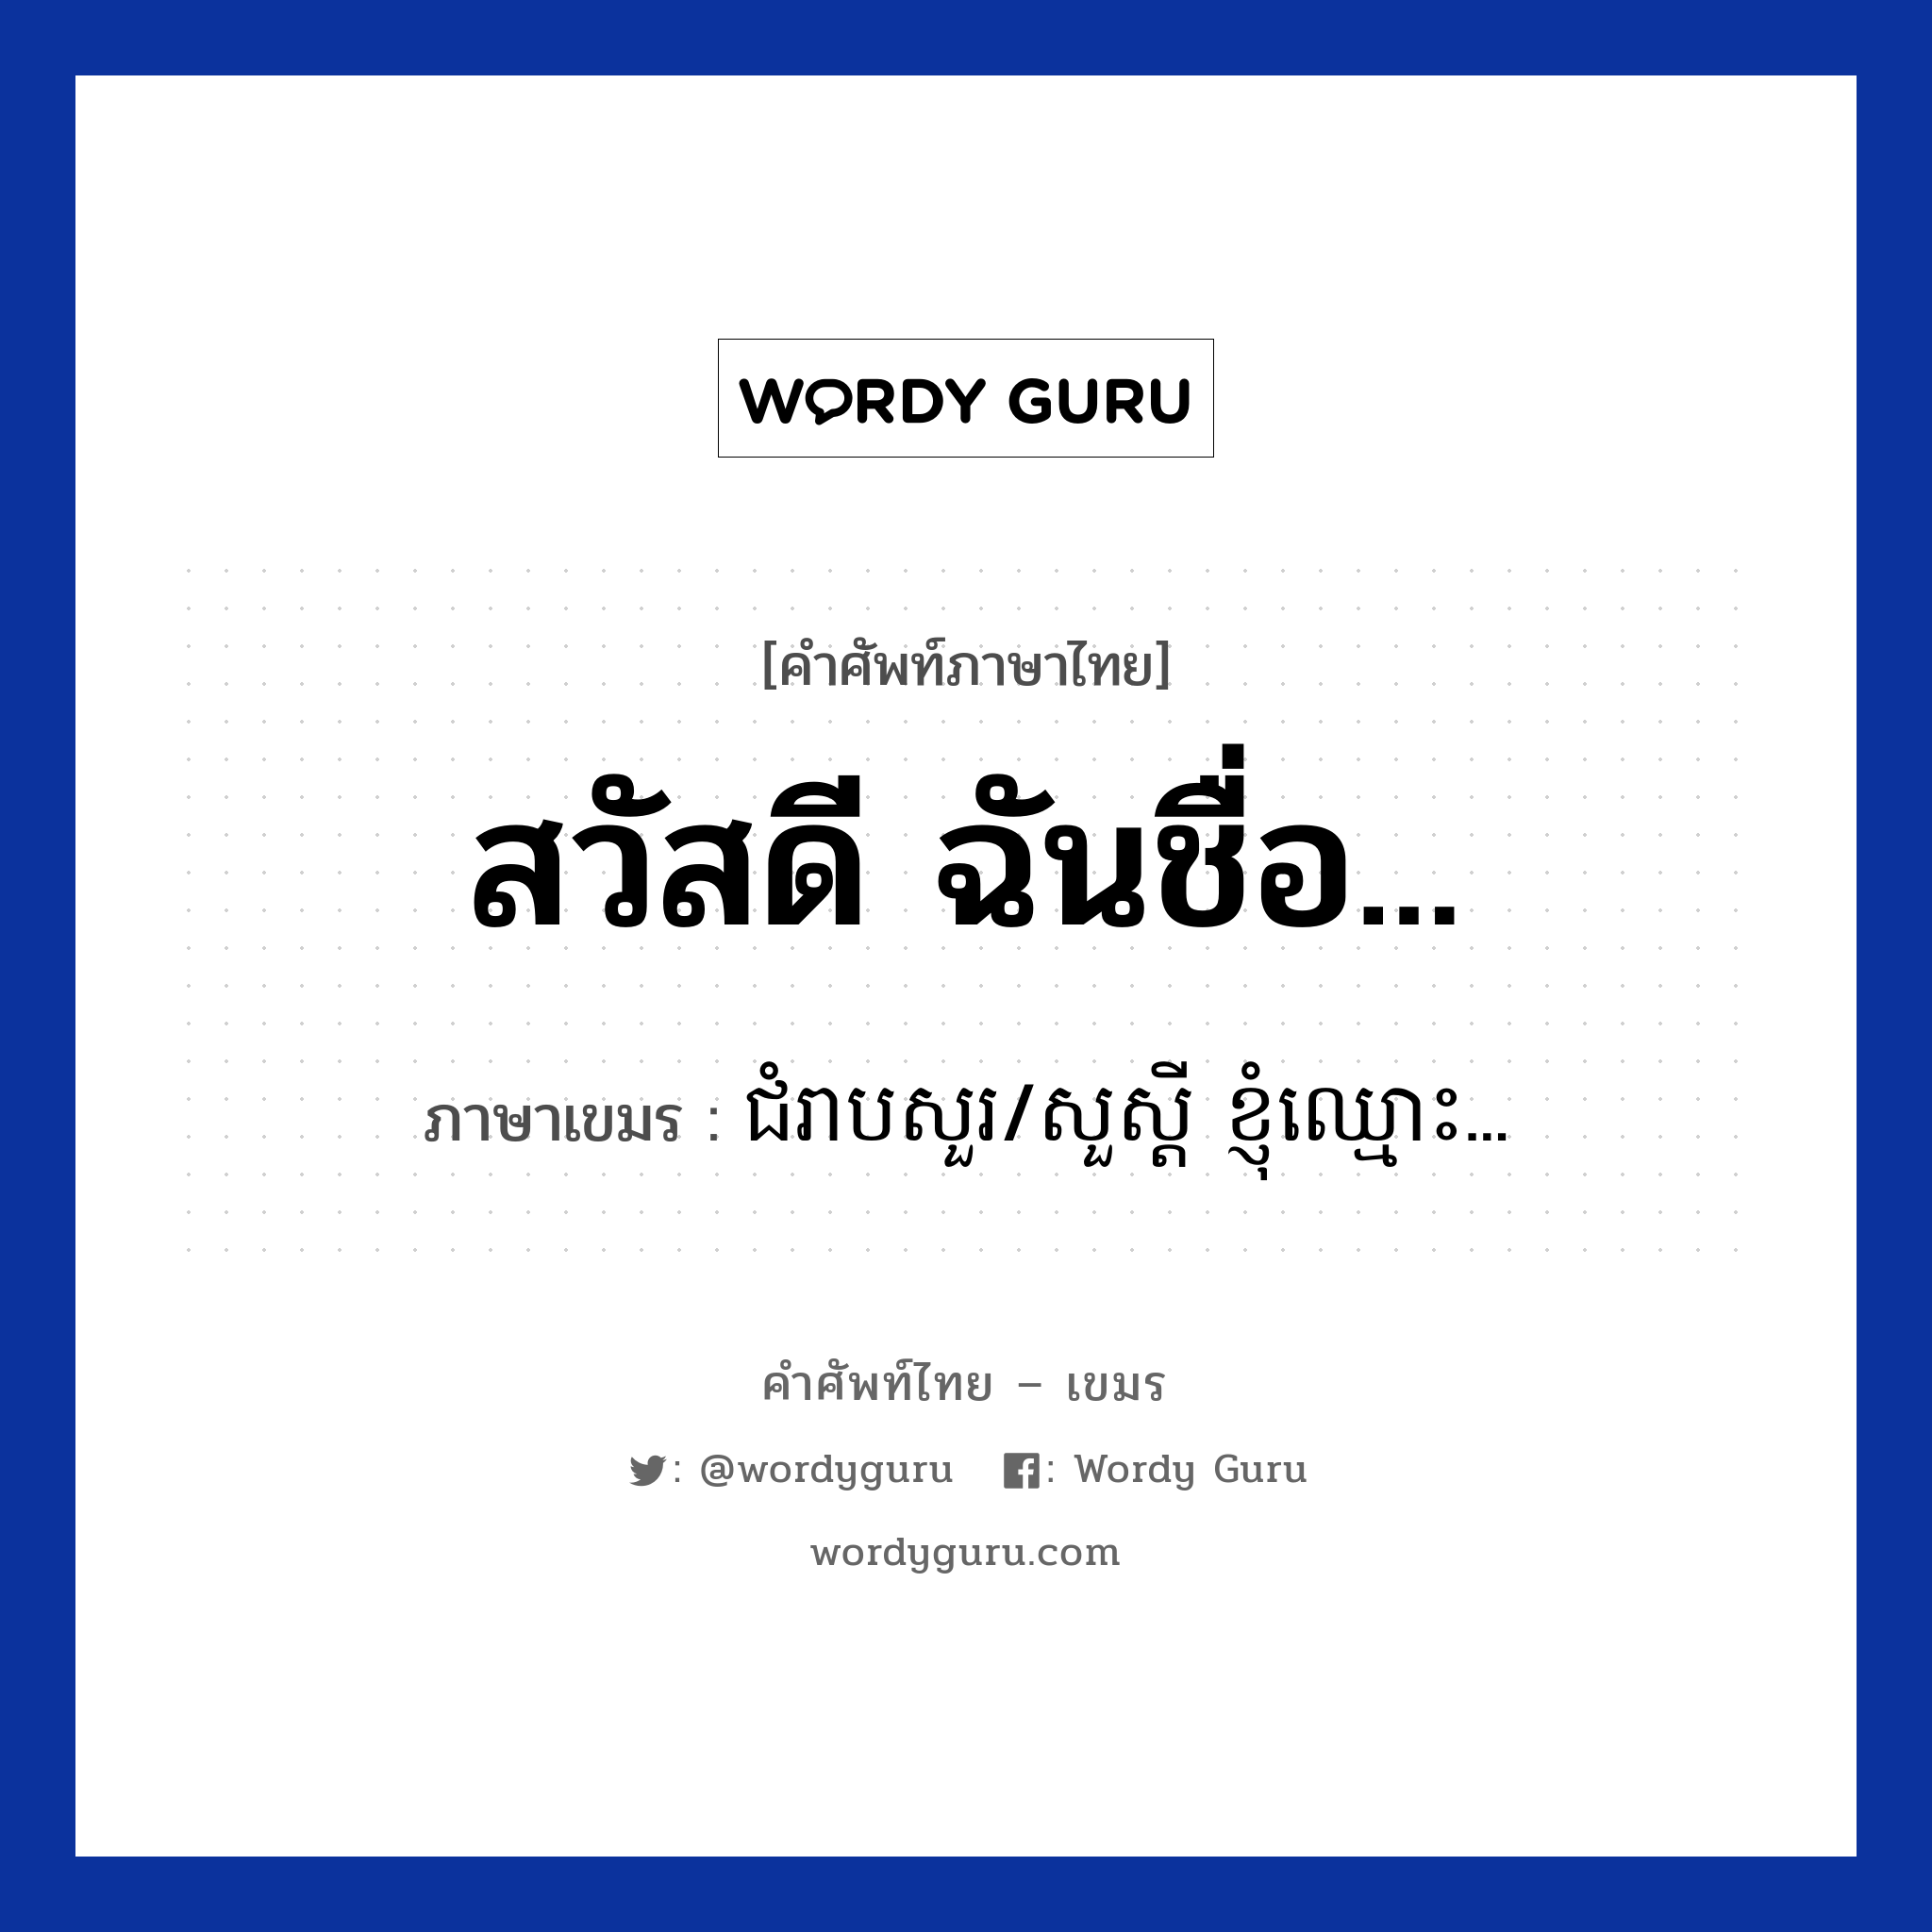 สวัสดี ฉันชื่อ... ภาษาเขมรคืออะไร, คำศัพท์ภาษาไทย - เขมร สวัสดี ฉันชื่อ... ภาษาเขมร ជំរាបសួរ/សួស្ដី ខ្ញុំឈ្មោះ... หมวด บทสนทนาทางโทรศัพท์ Chom reabsour/soursdey knhom smors หมวด บทสนทนาทางโทรศัพท์